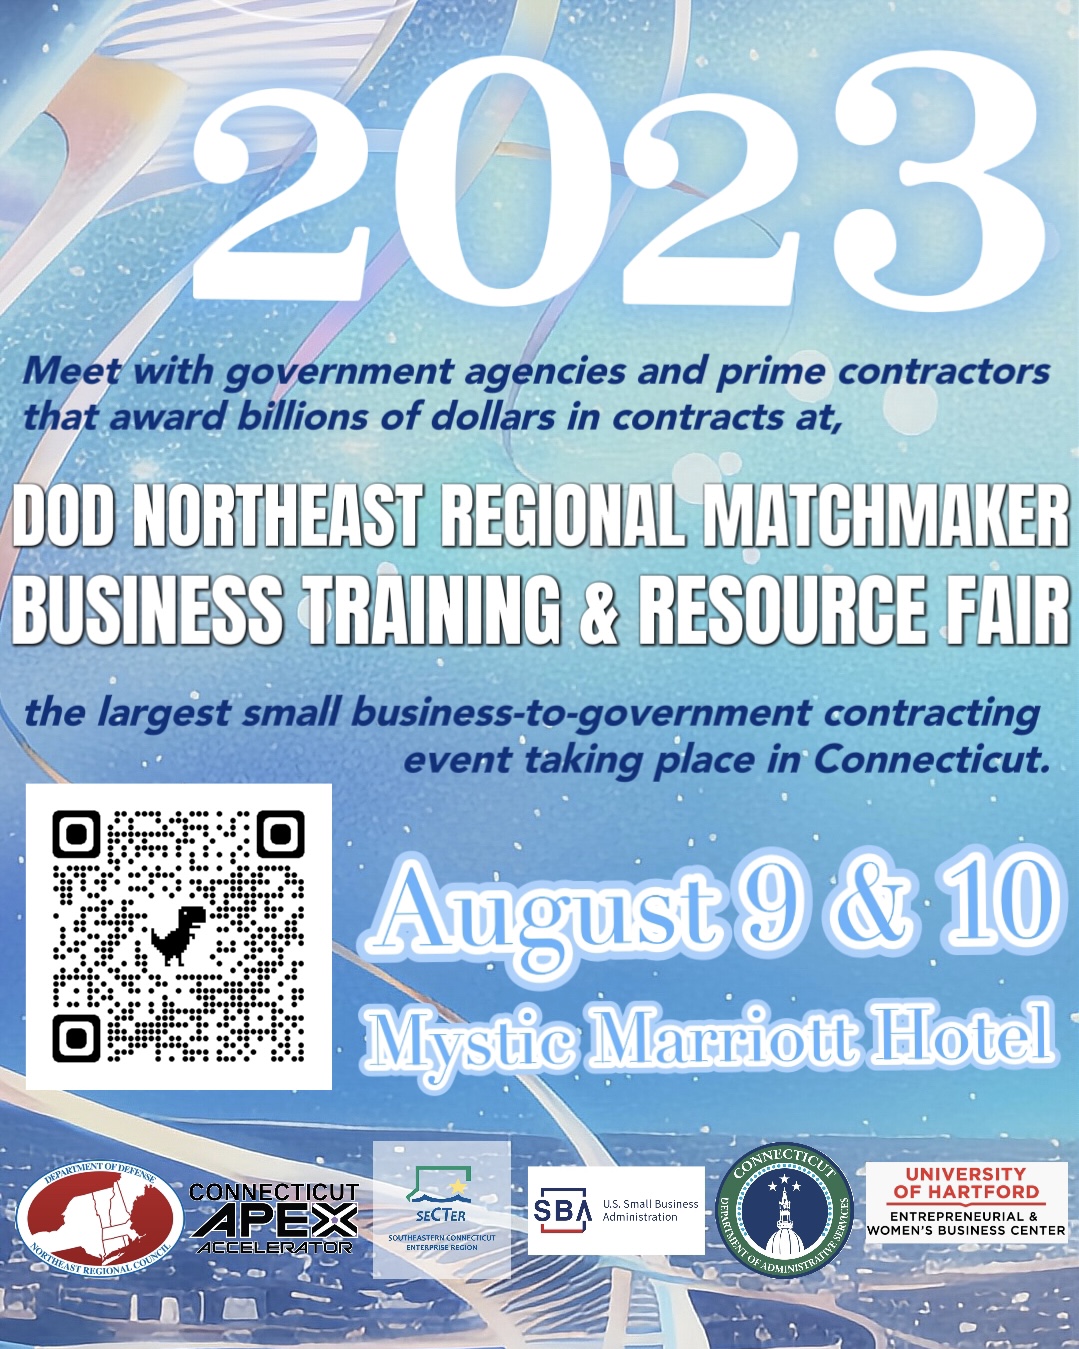 DoD Northeast Regional Matchmaker Business Training & Resource Fair